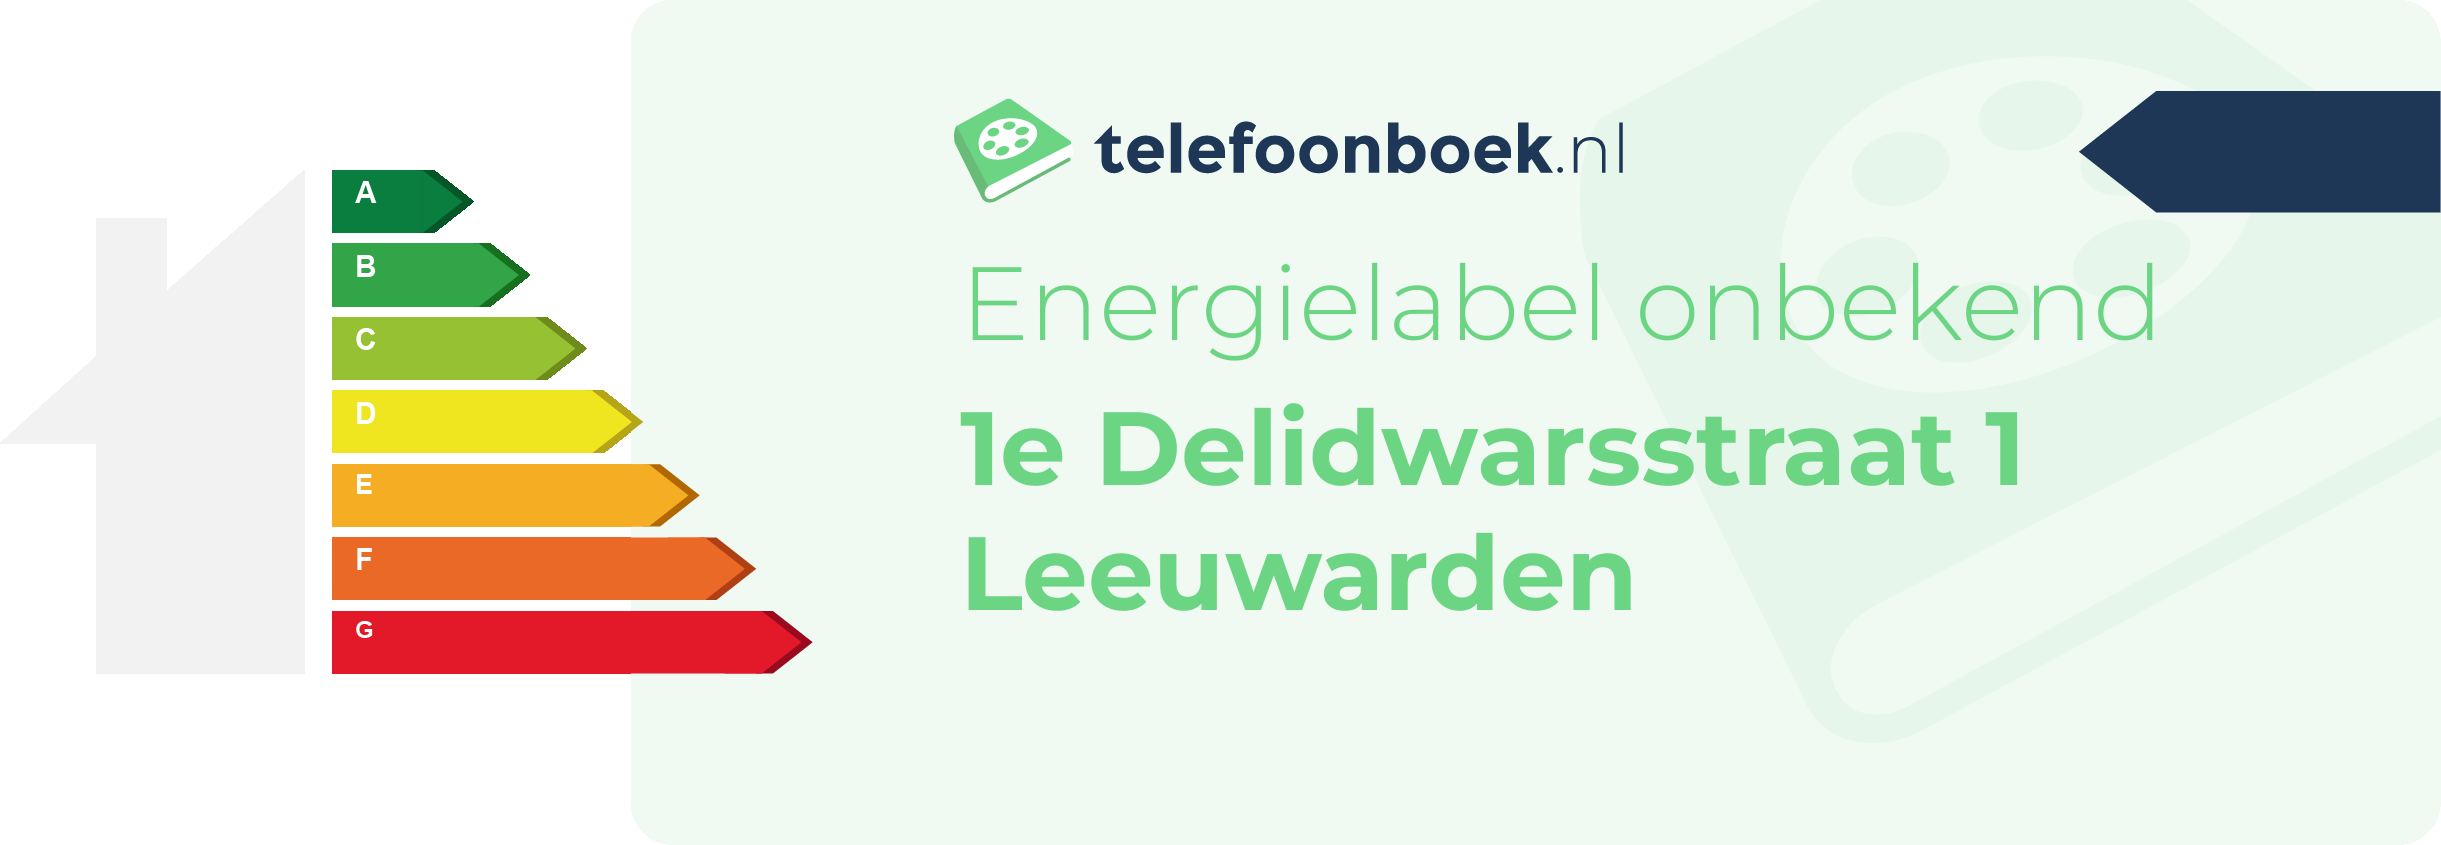 Energielabel 1e Delidwarsstraat 1 Leeuwarden